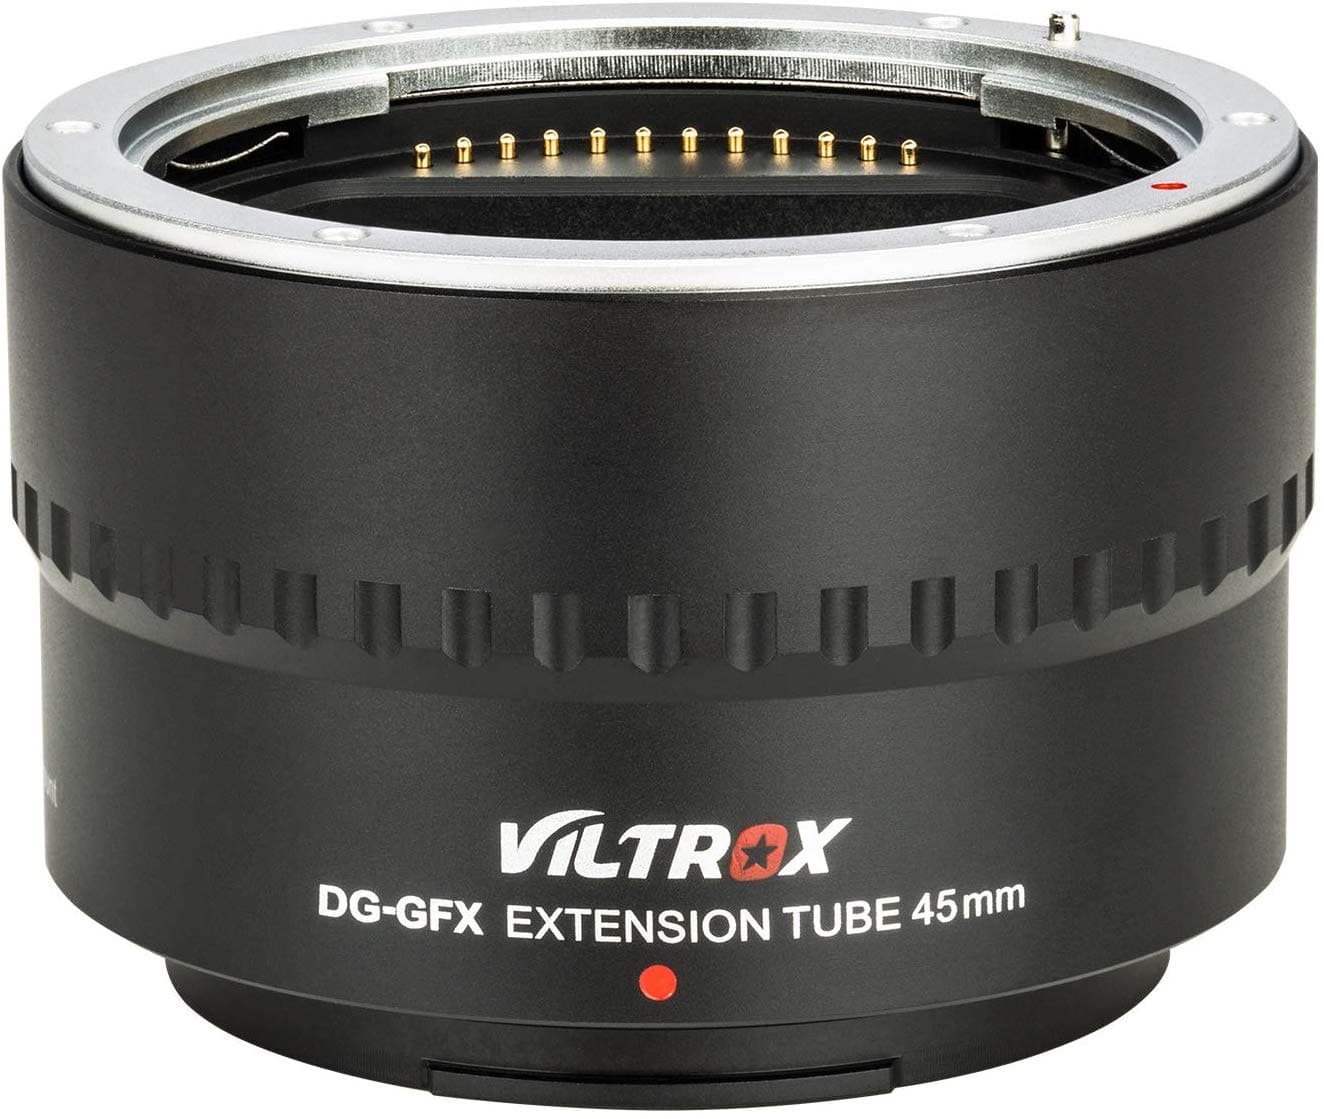 VILTROX DG-GFX 45mm Extension Tube for Fuji GFX-Mount med-Format Cameras FUJIFILM GFX50S/GFX50R